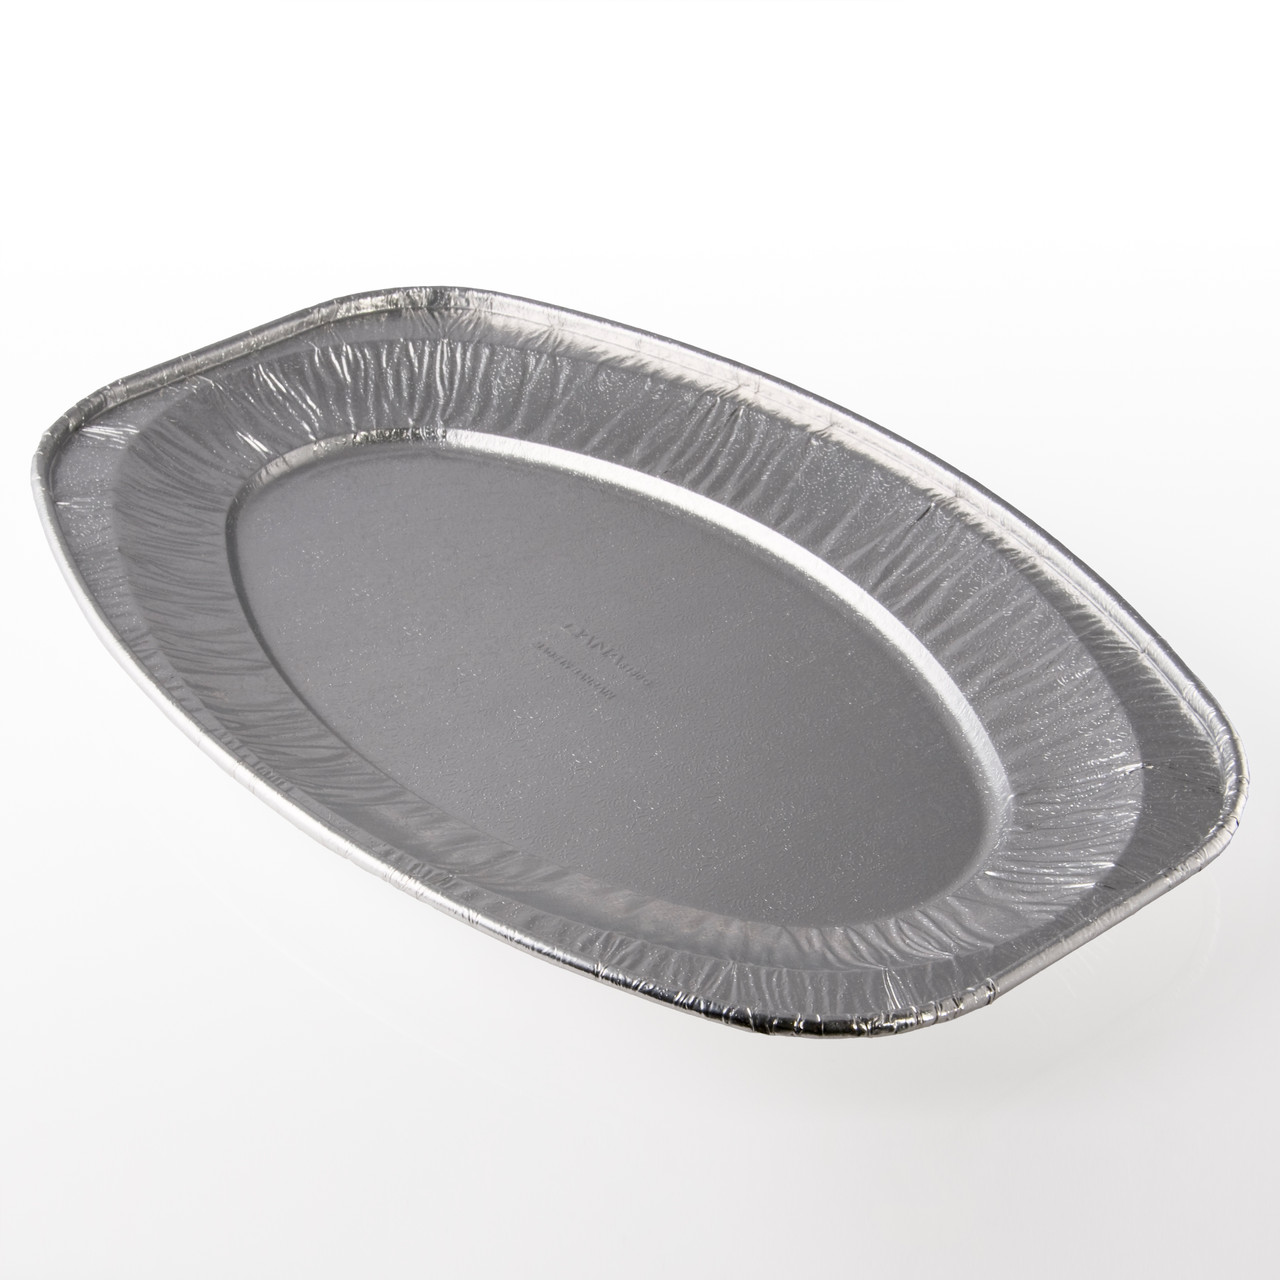 Foil Embossed Oval Platter (559mm/22")